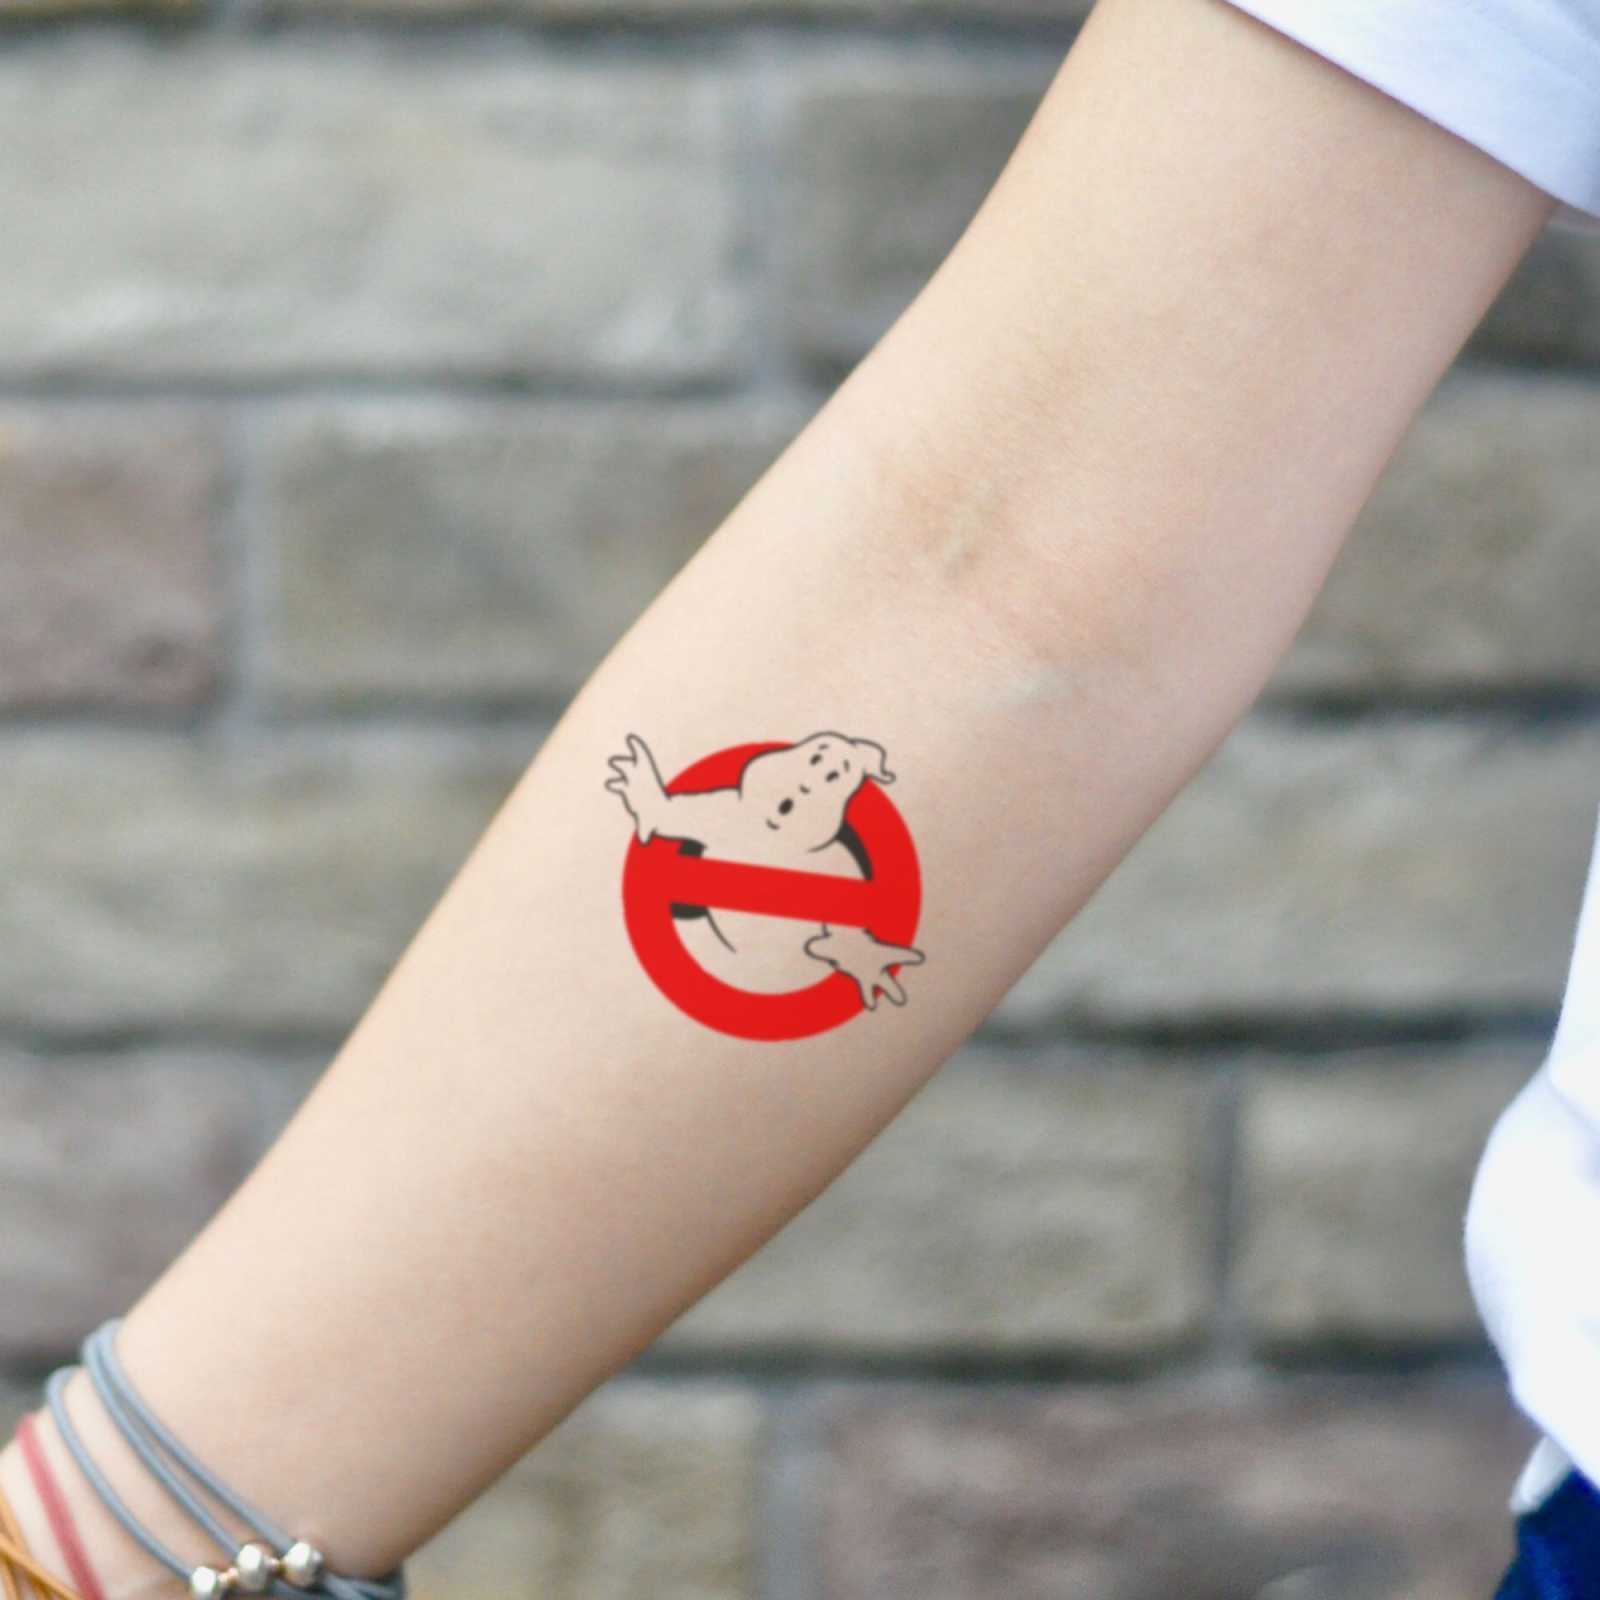 Ghostbusters Temporary Tattoo Sticker - OhMyTat  Tattoos, Tattoo